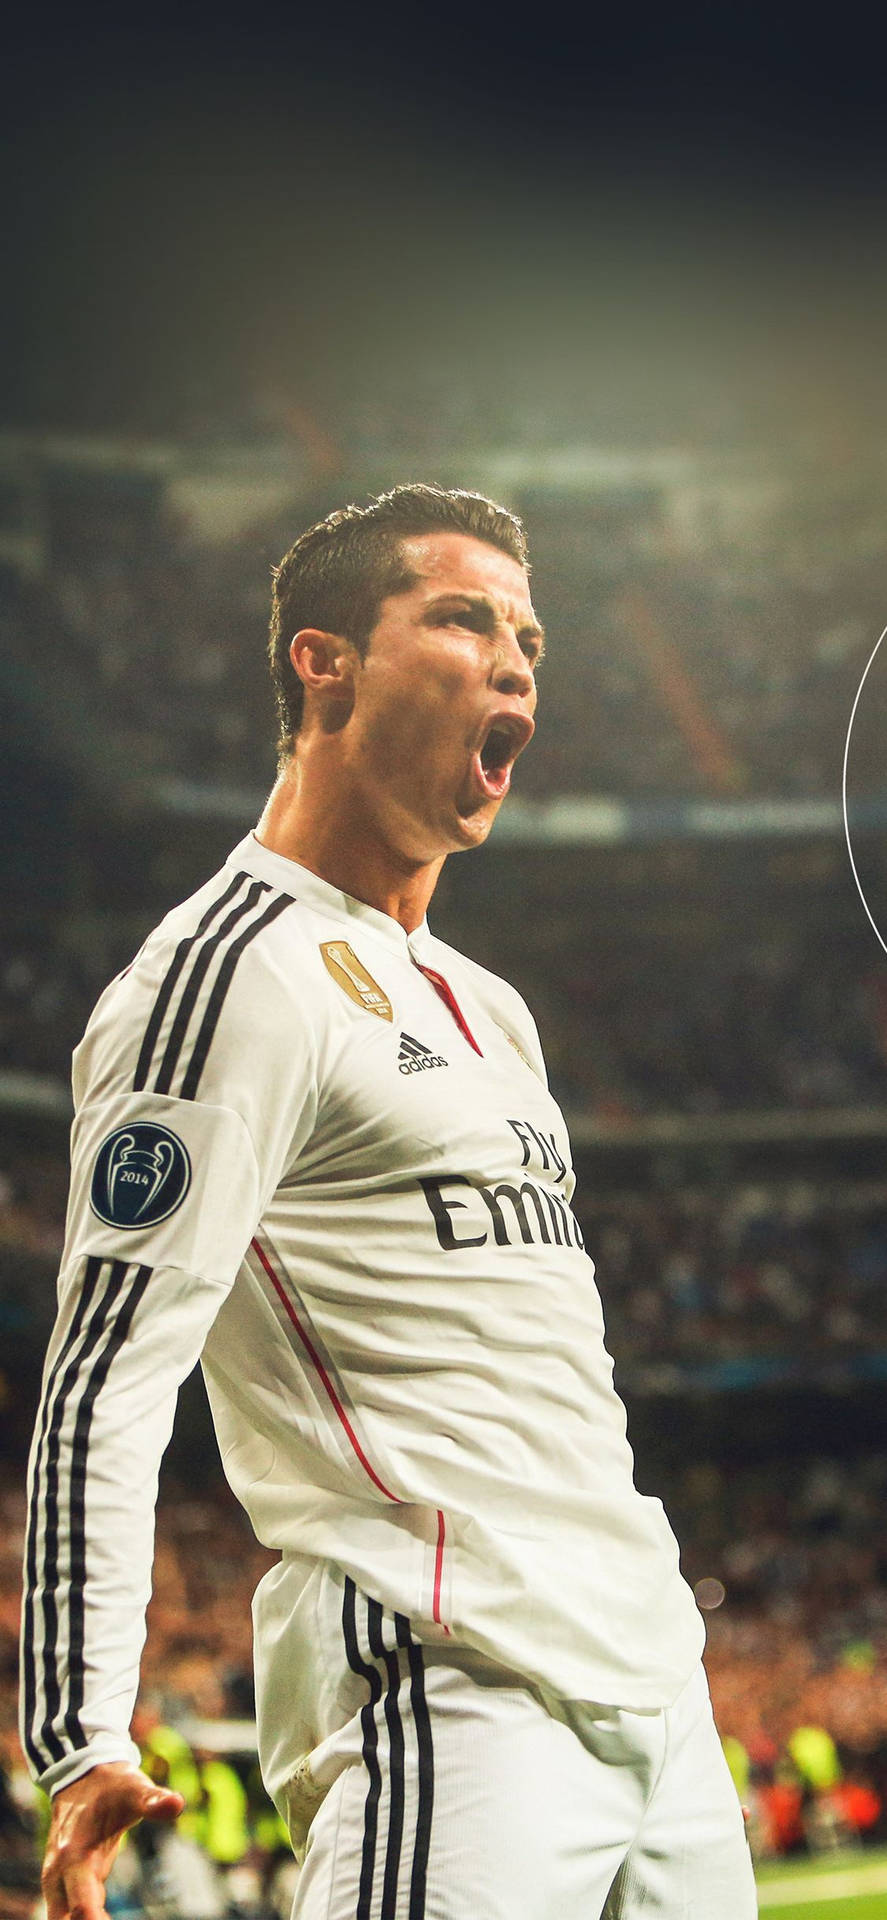 Calientefondo De Pantalla De Cristiano Ronaldo Para Iphone. Fondo de pantalla